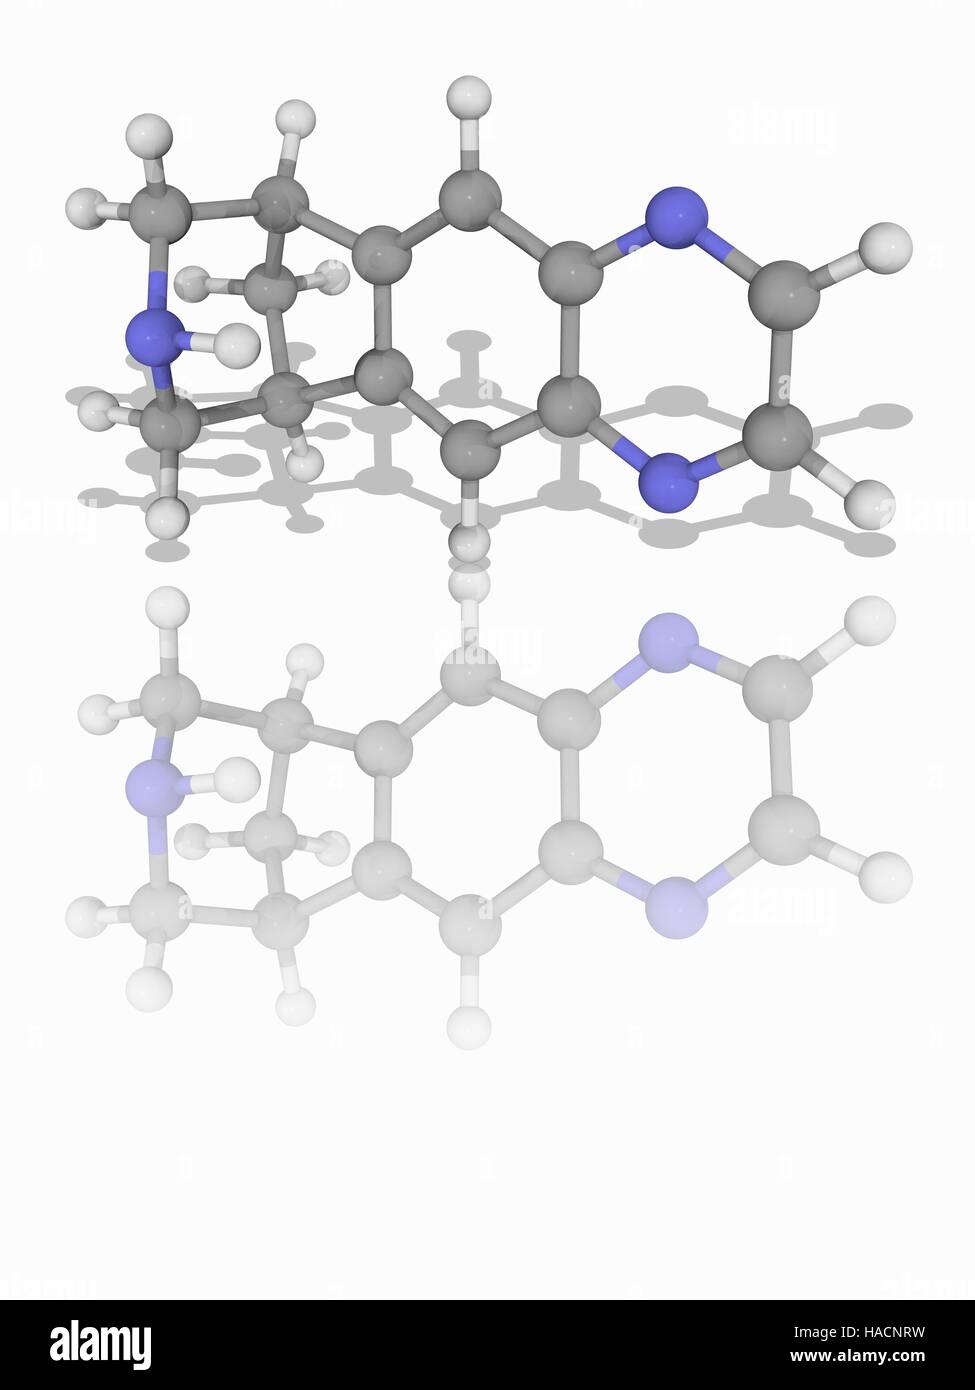 Vareniclin. Molekulares Modell des Medikament Vareniclin (C13. H13. N3), einen teilweise Nikotinsäure Rezeptor-Agonisten zur Behandlung von Nikotinsucht. Atome als Kugeln dargestellt werden und sind farblich gekennzeichnet: Kohlenstoff (grau), Wasserstoff (weiß) und Stickstoff (blau). Abbildung. Stockfoto